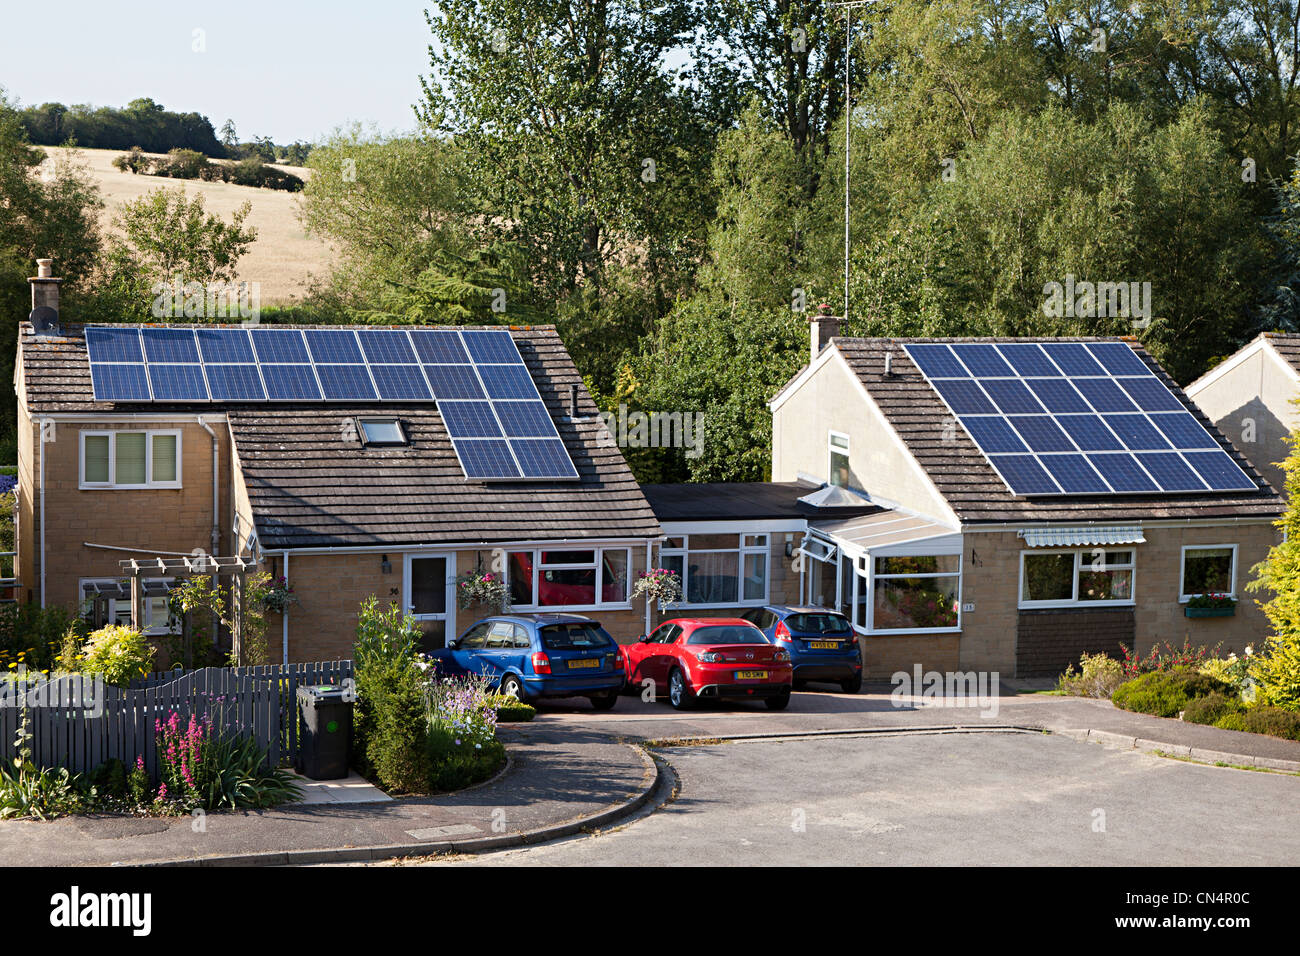 Des panneaux solaires sur les toits de maison, Woodstock, Oxfordshire, UK Banque D'Images